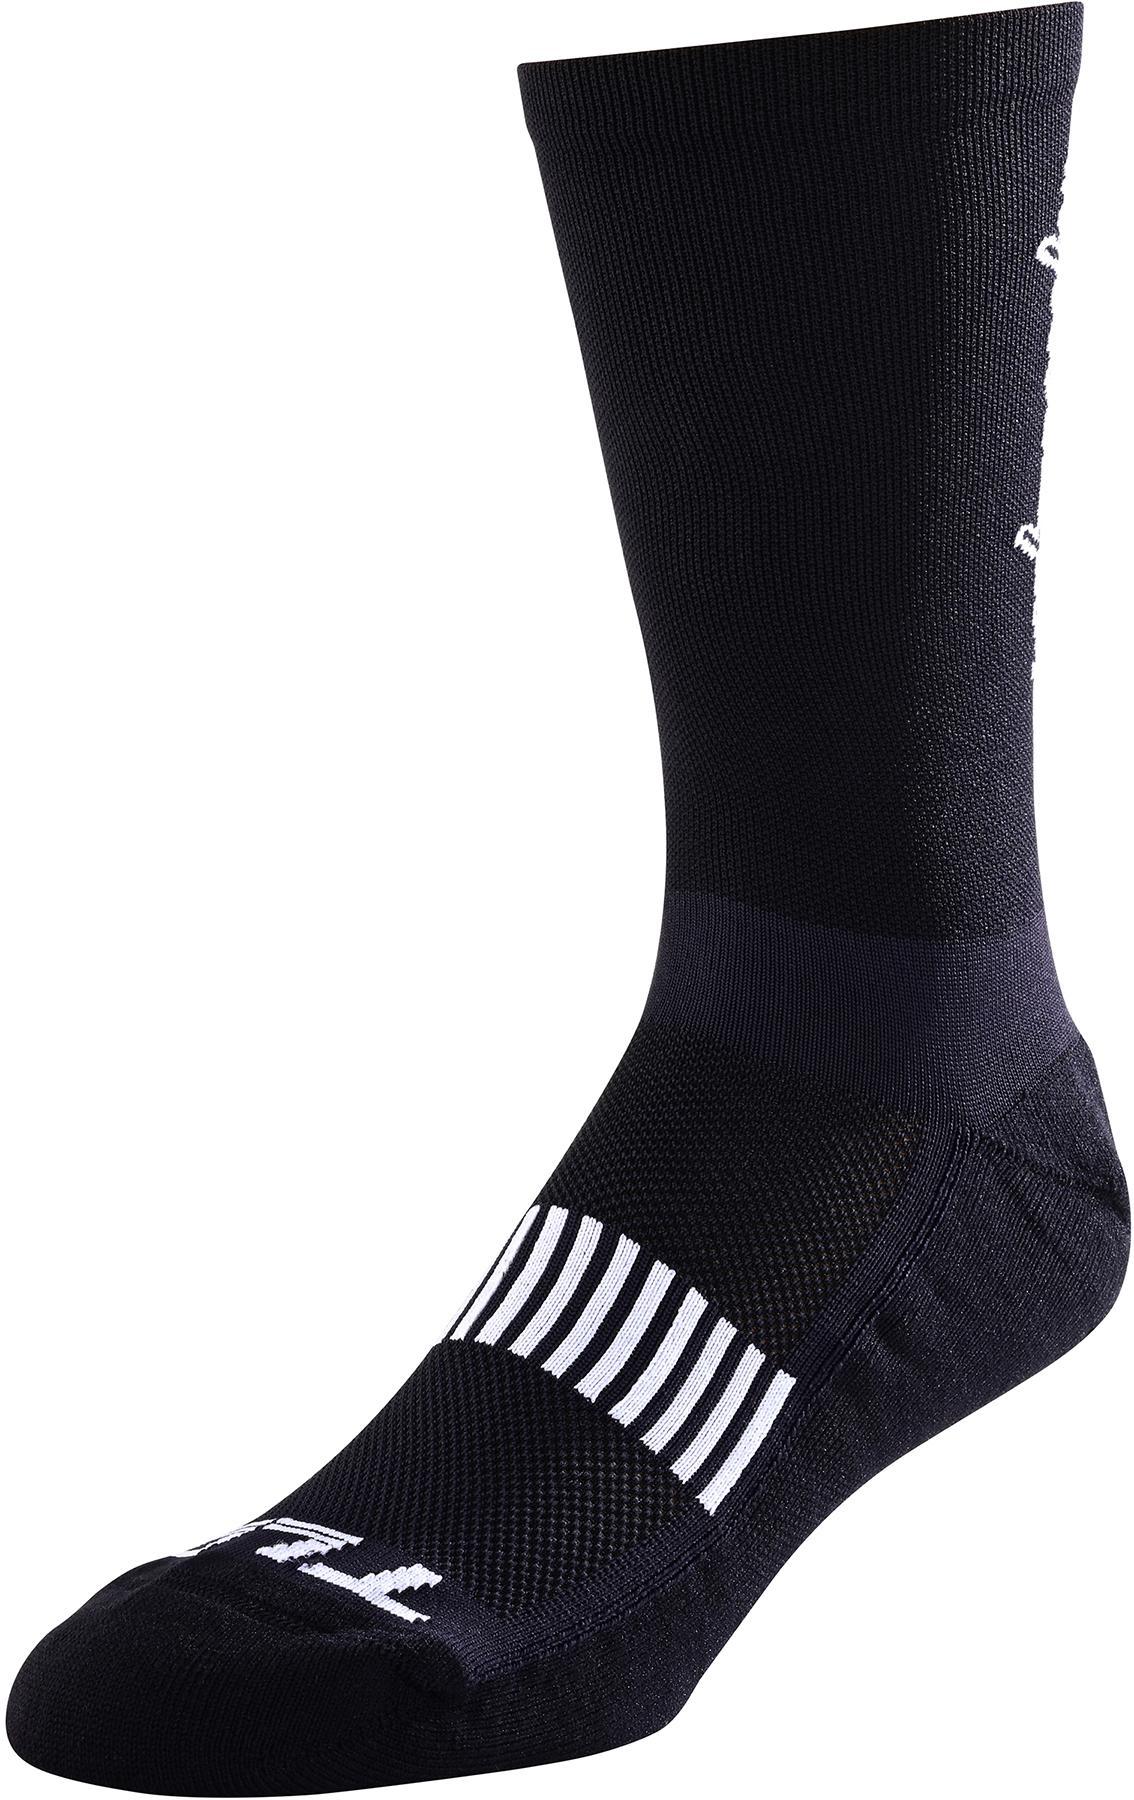 Troy Lee Designs Performance Signature Socks - Black